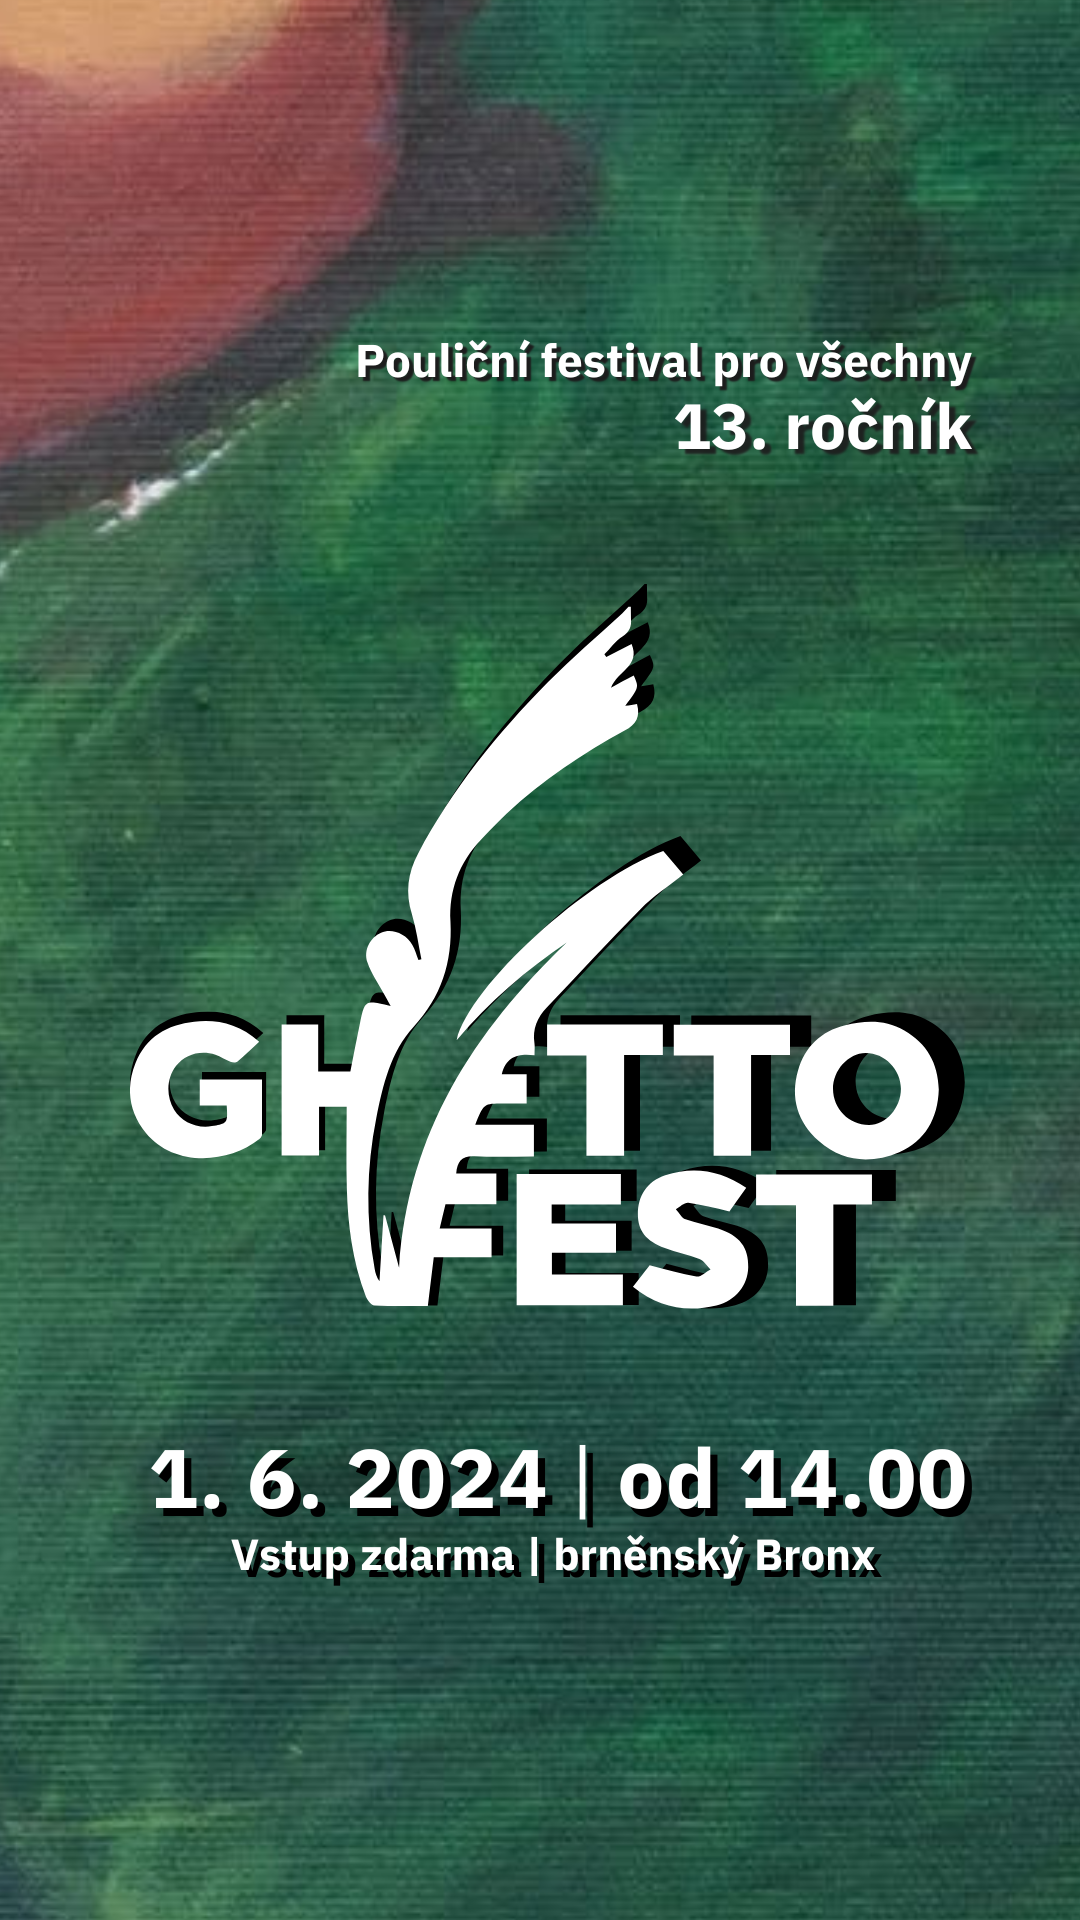 Ghettofest 2024 hledá dobrovolníky/ce